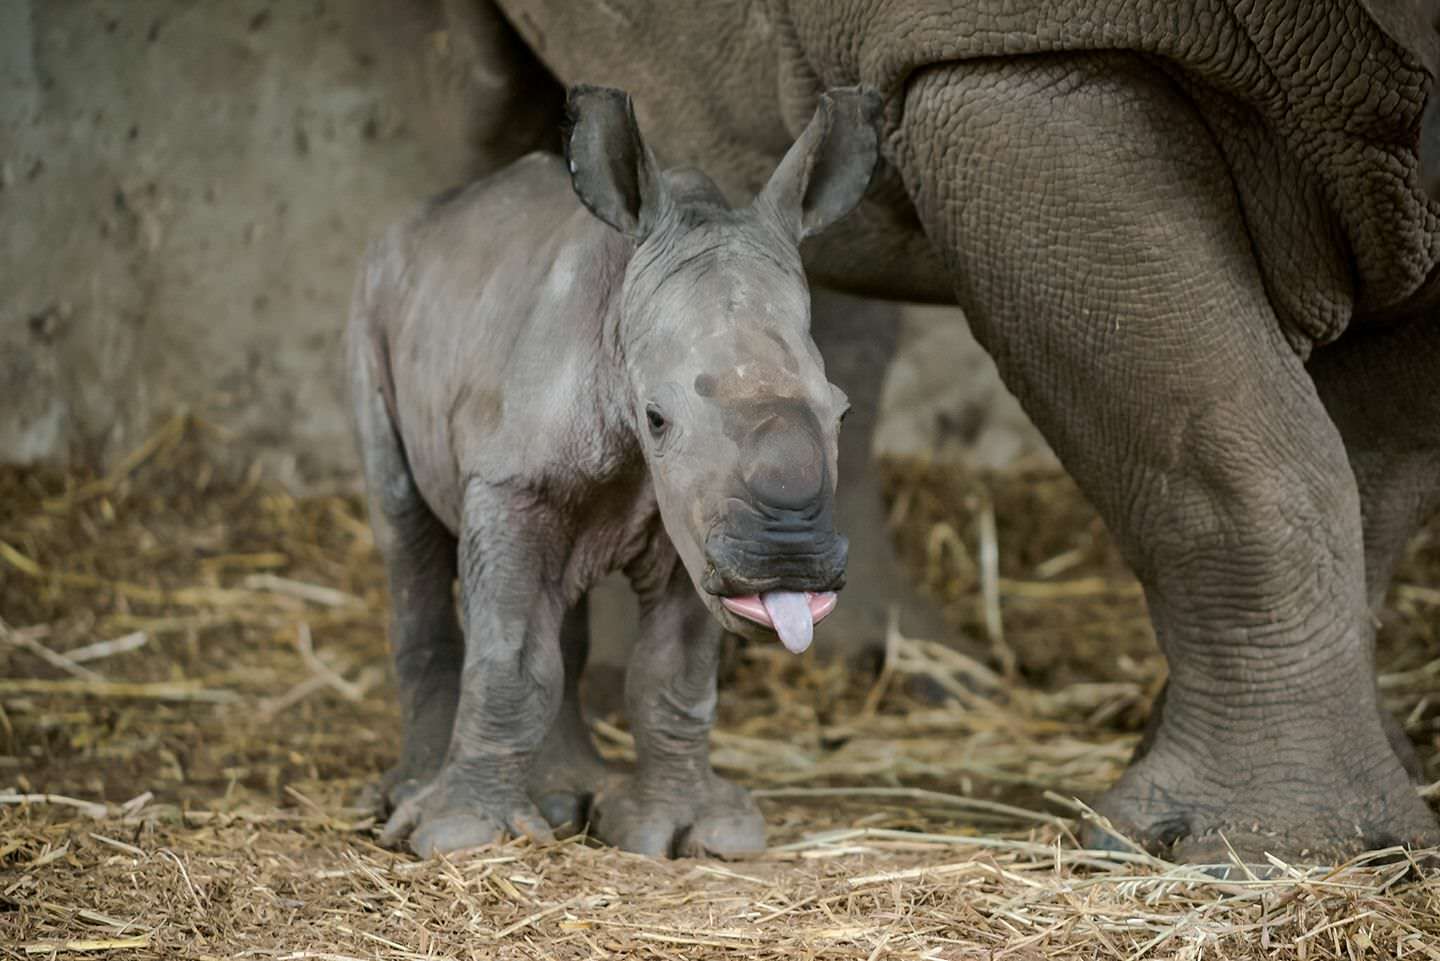 Bébé rhinocéros avec sa langue qui sort